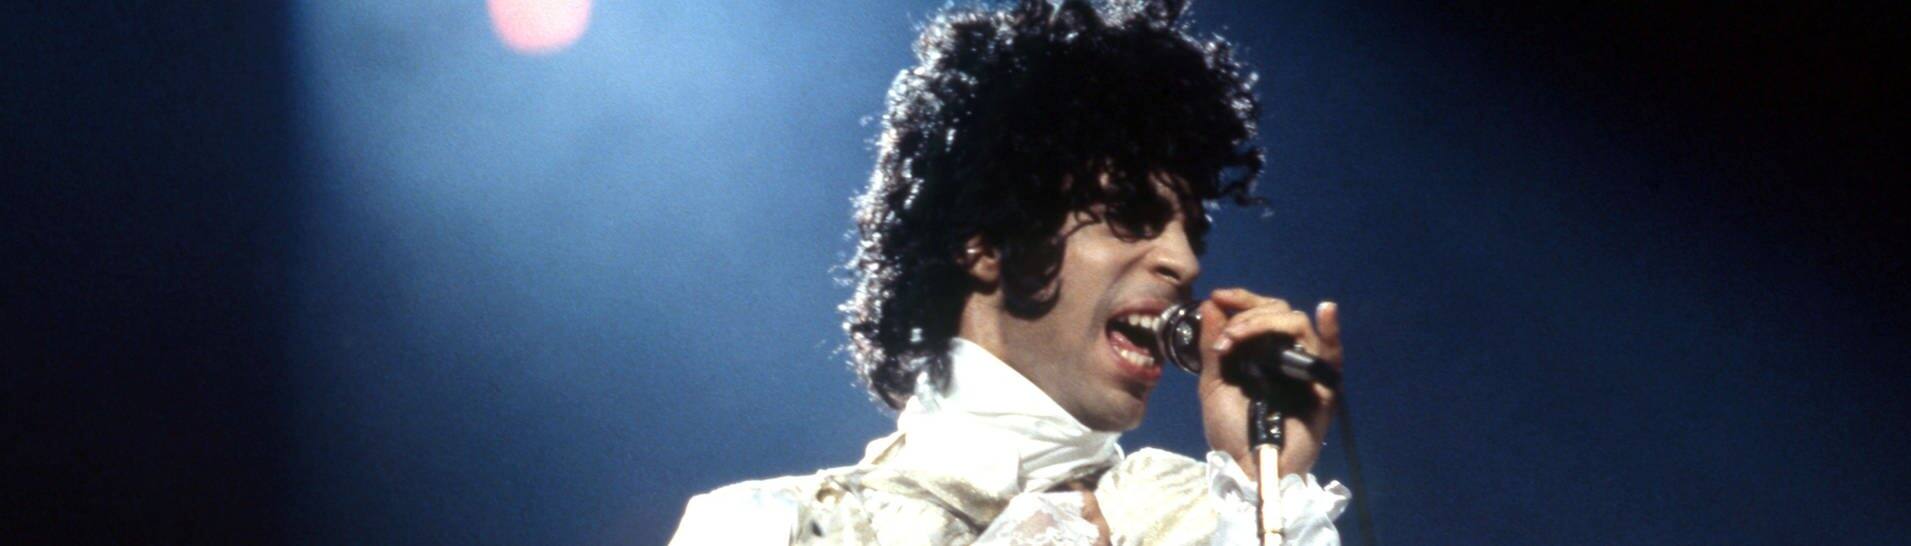 Popstar Prince 1984 bei einem Live-Konzert in Michigan (Foto: picture-alliance / Reportdienste, Picture Alliance)